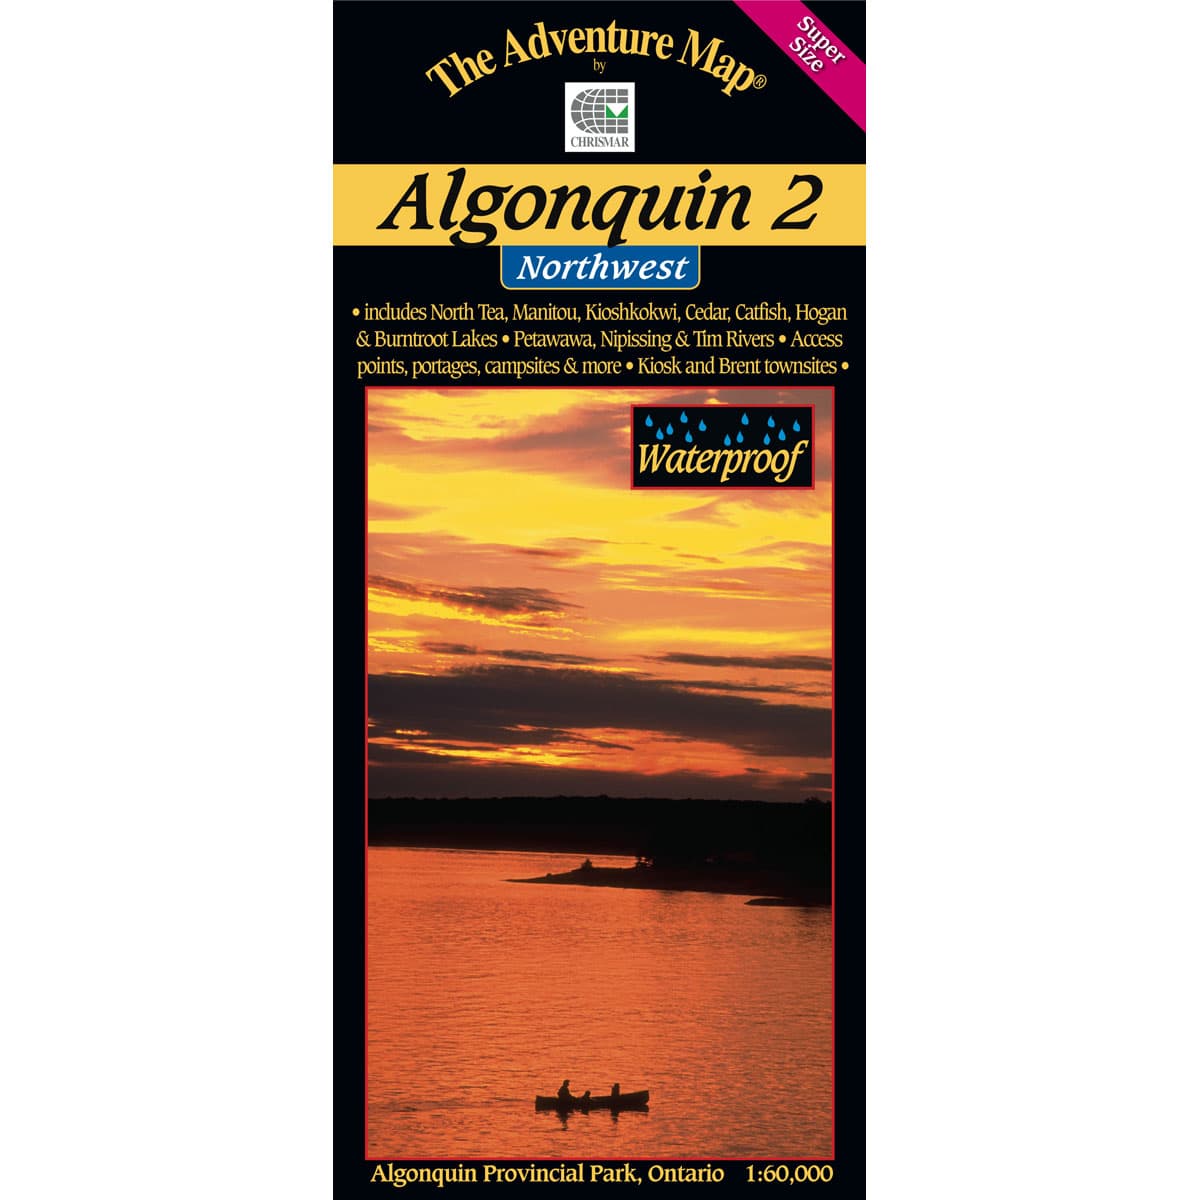 The Adventure Map Algonquin 2 Northwest